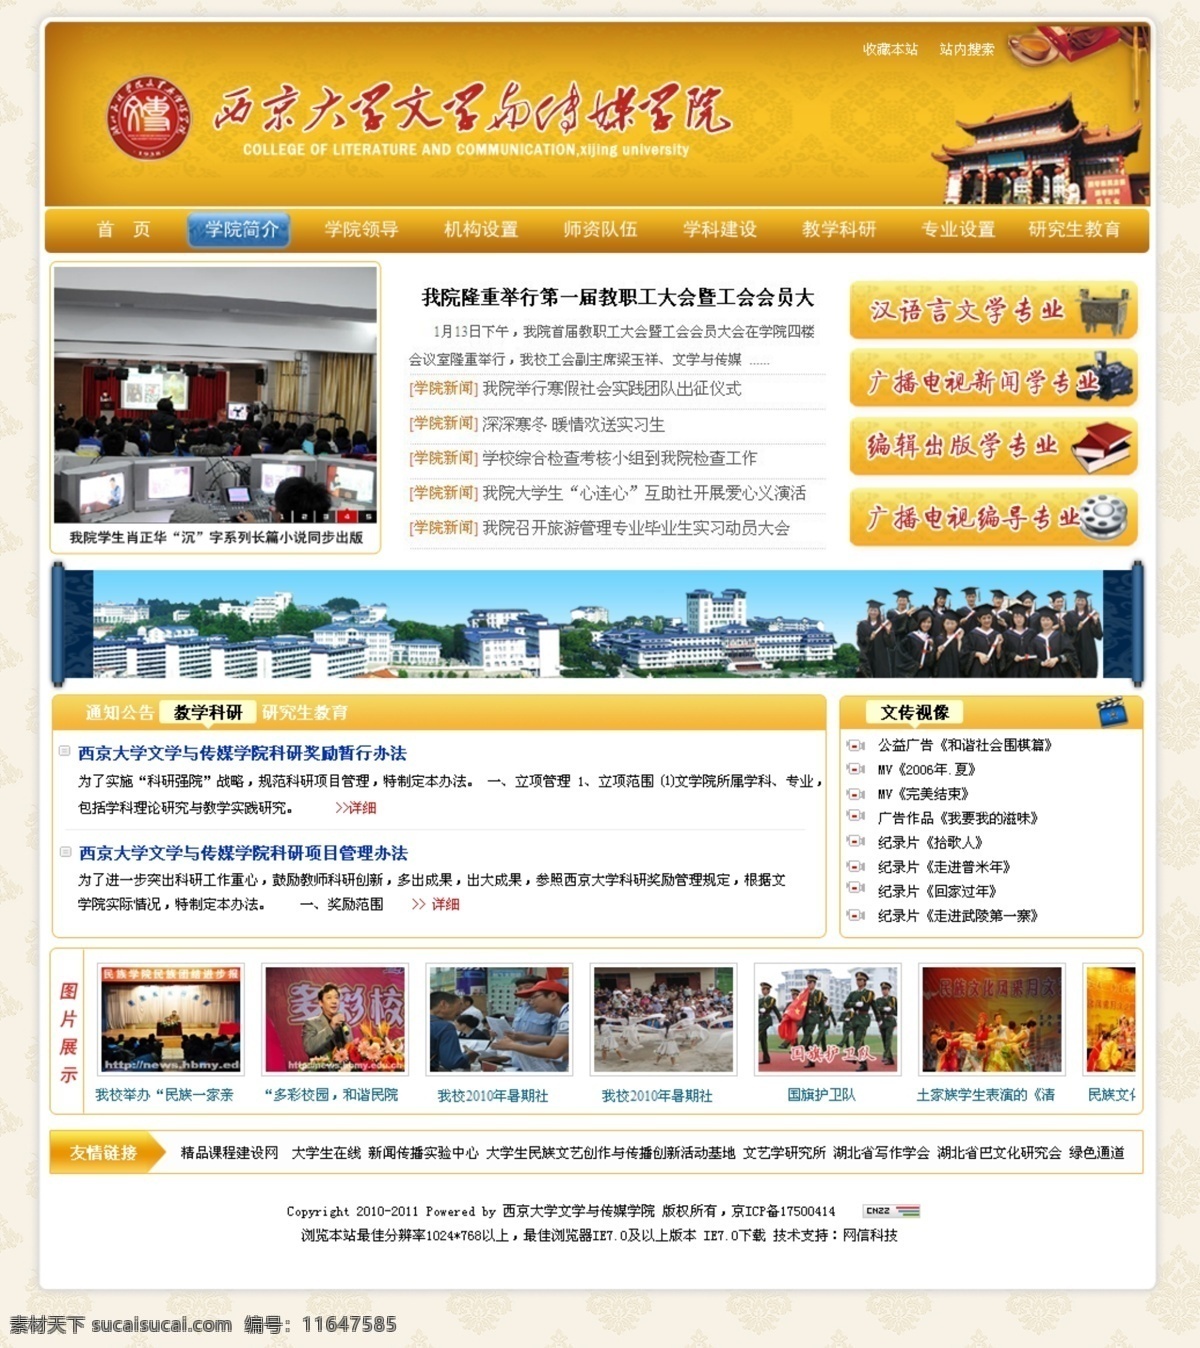 高校 网页 模版 大学 古典 网页模板 网页模版 源文件 中文模版 高校网页模版